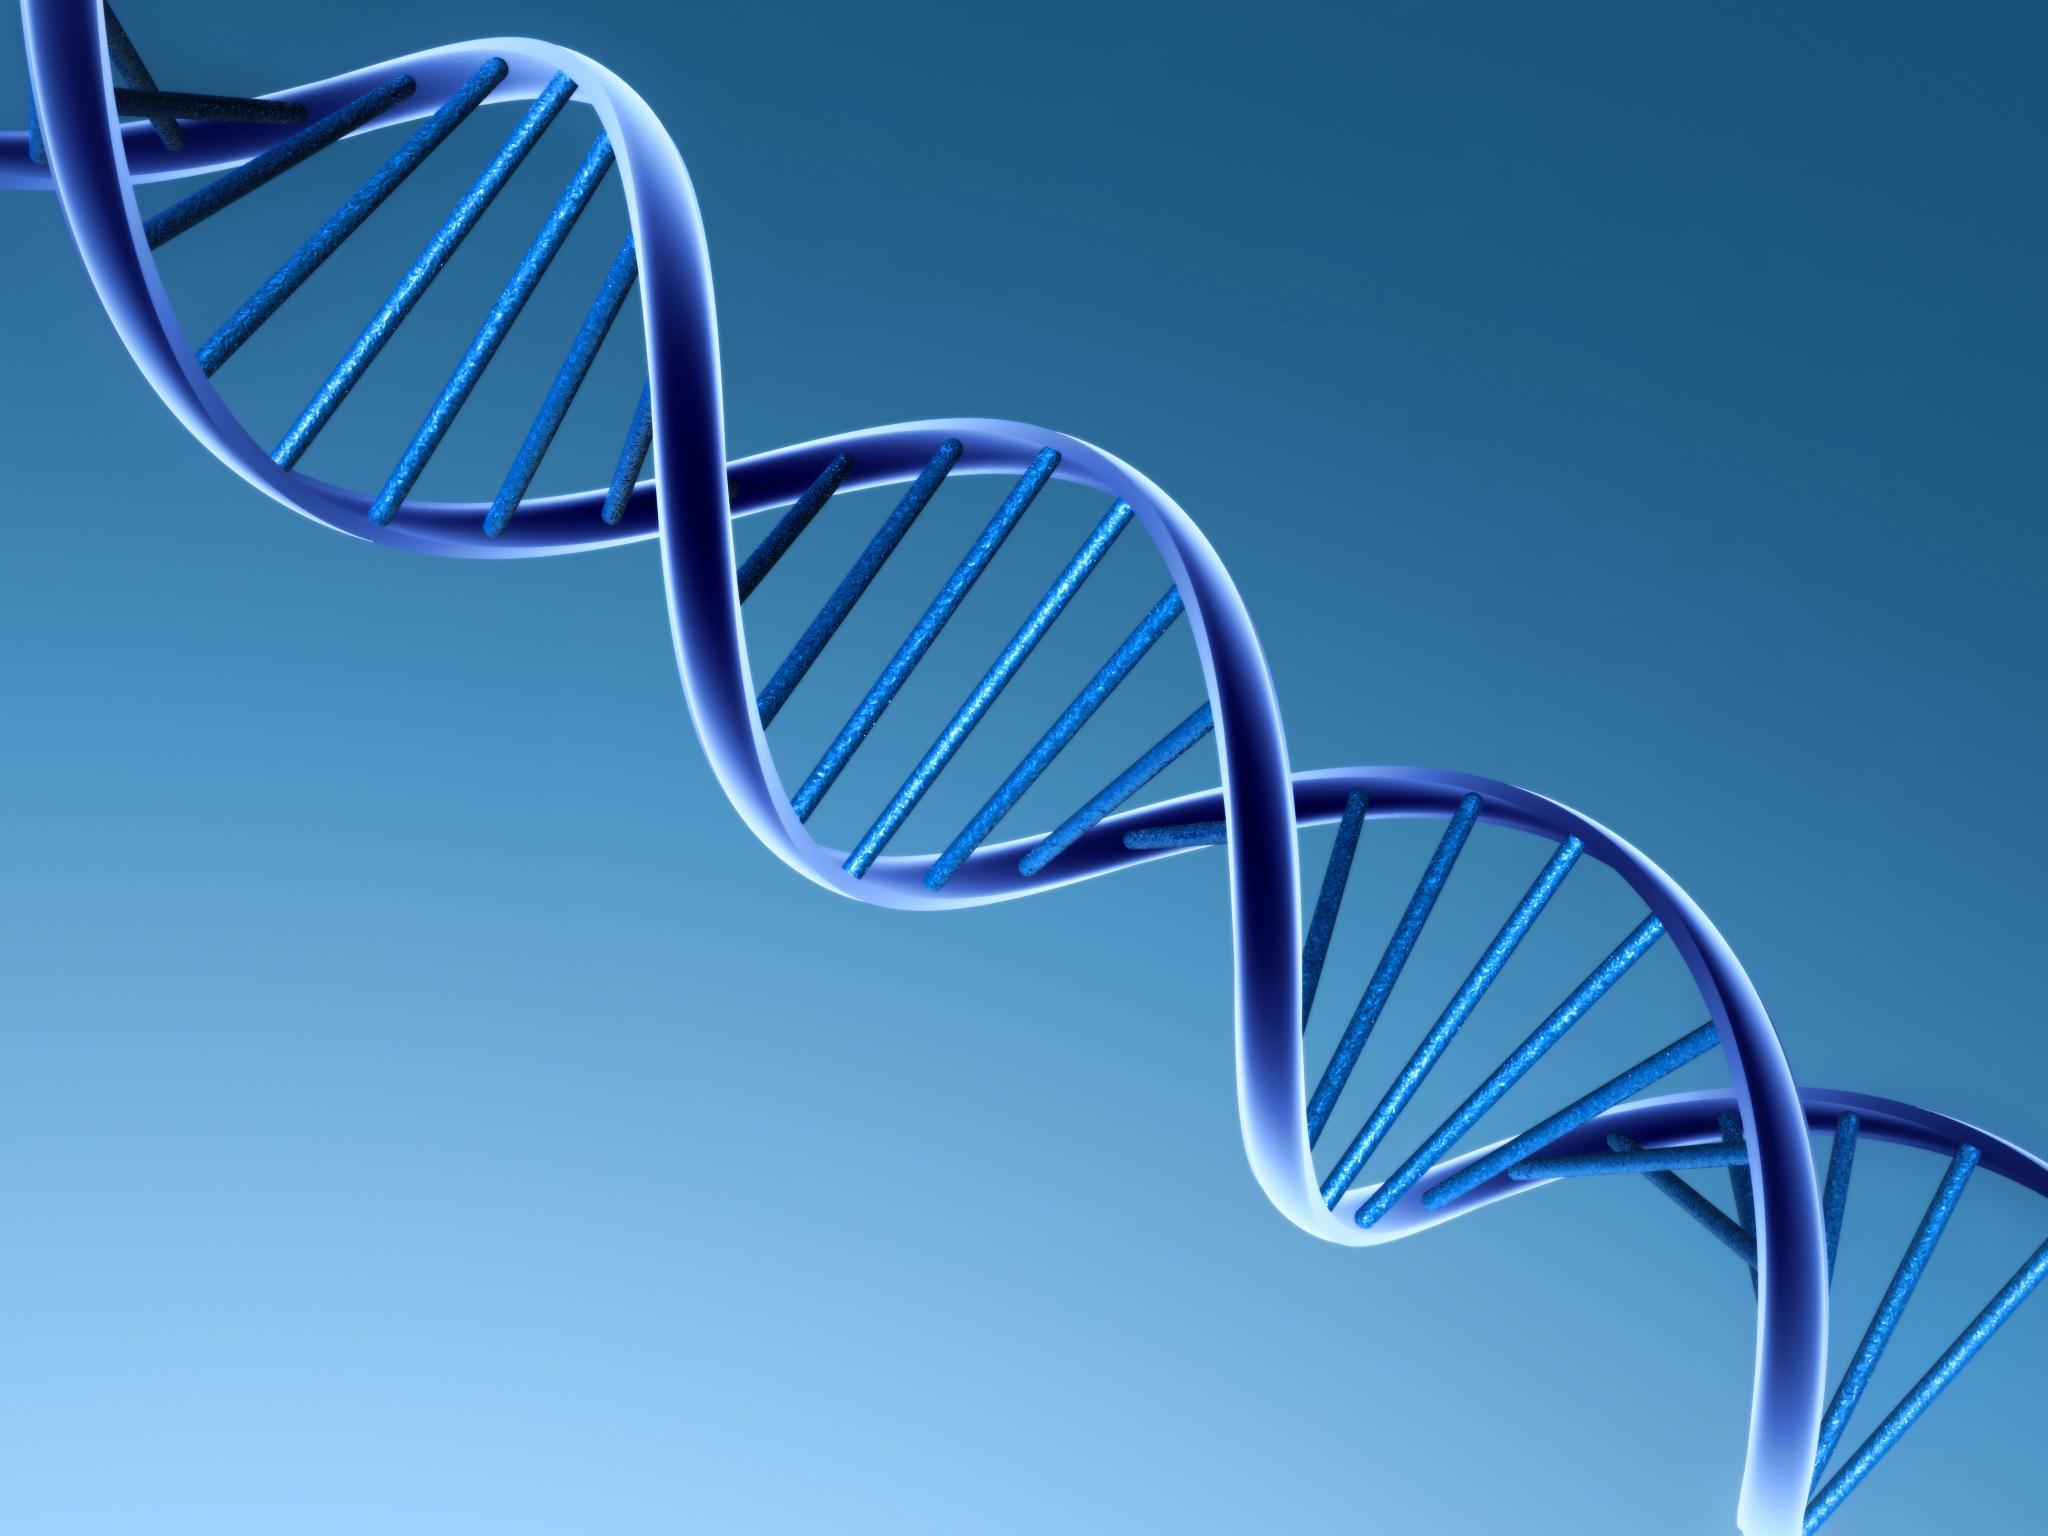 Architekt korporacyjny stara się zmienić DNA